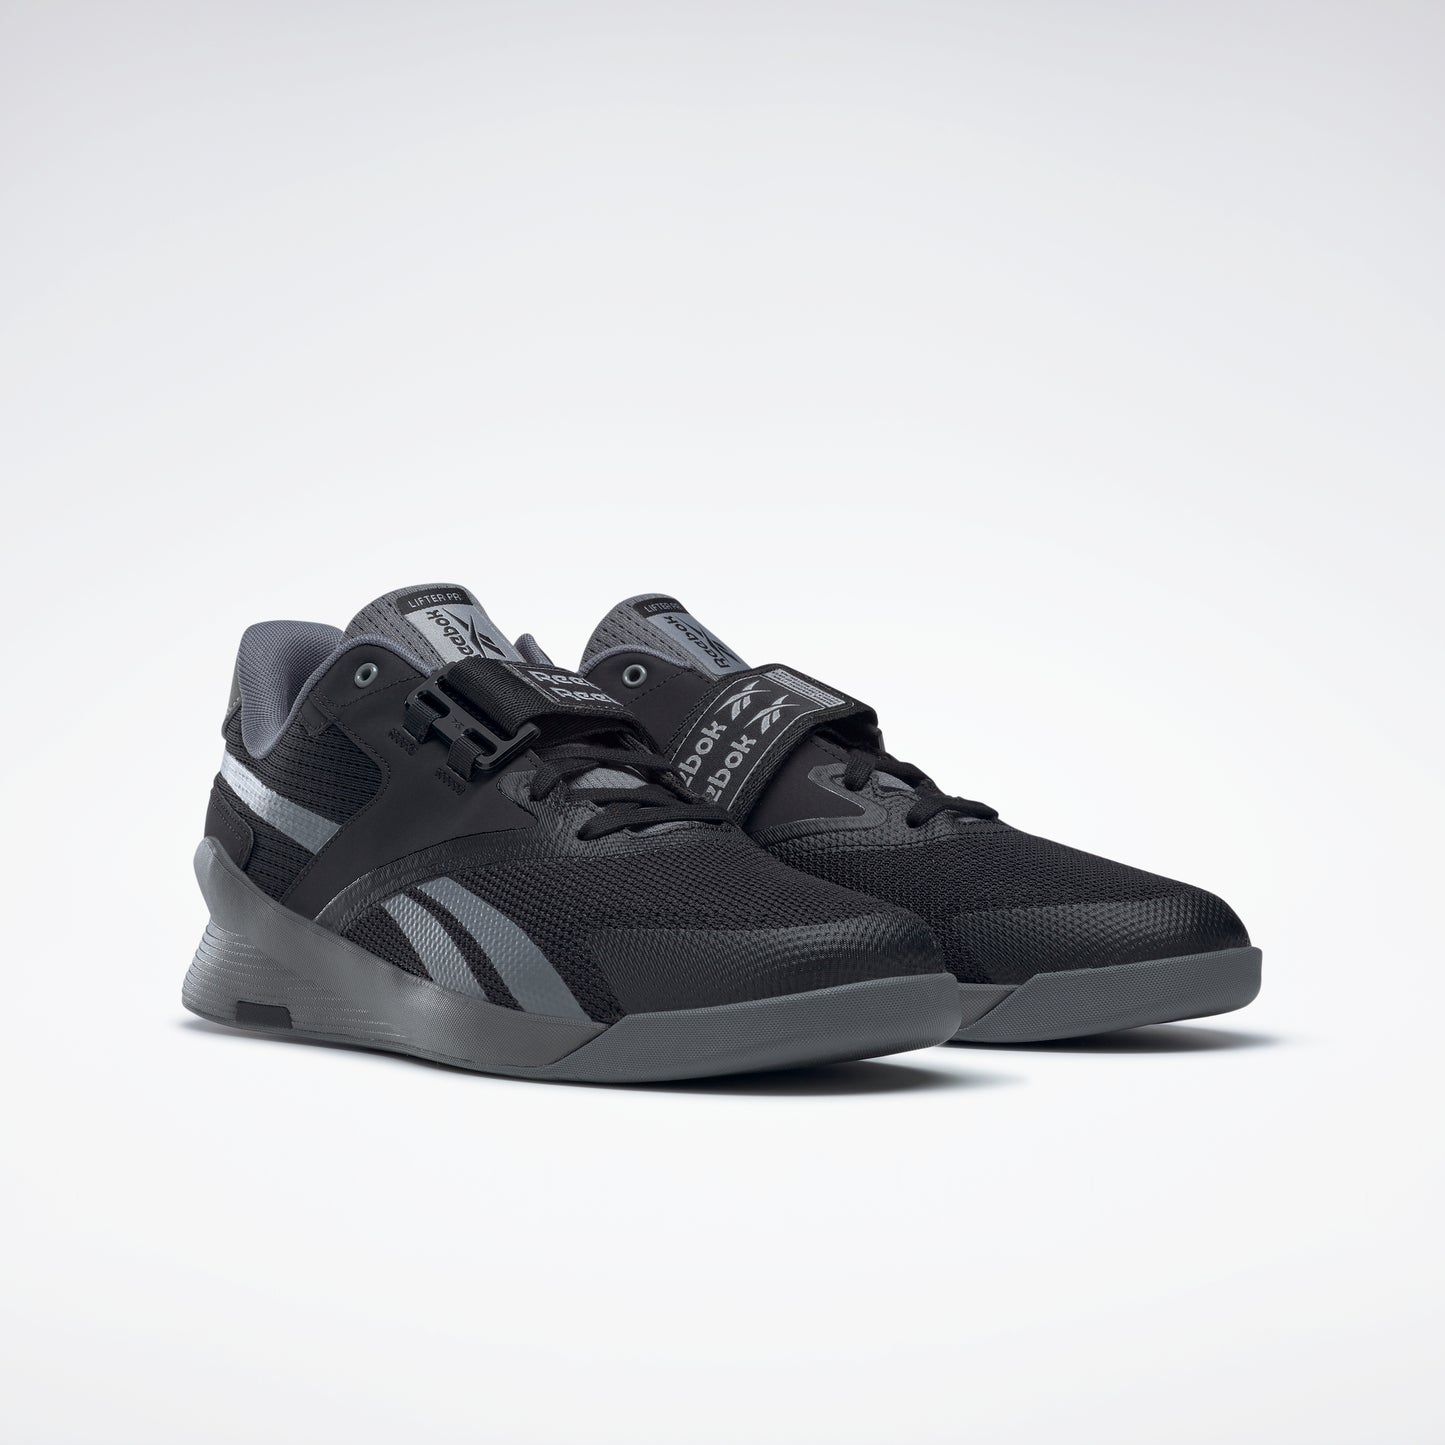 Reebok Footwear Men Lifter Pr Ii Shoes Core Black/Pewter/Pure Grey 6